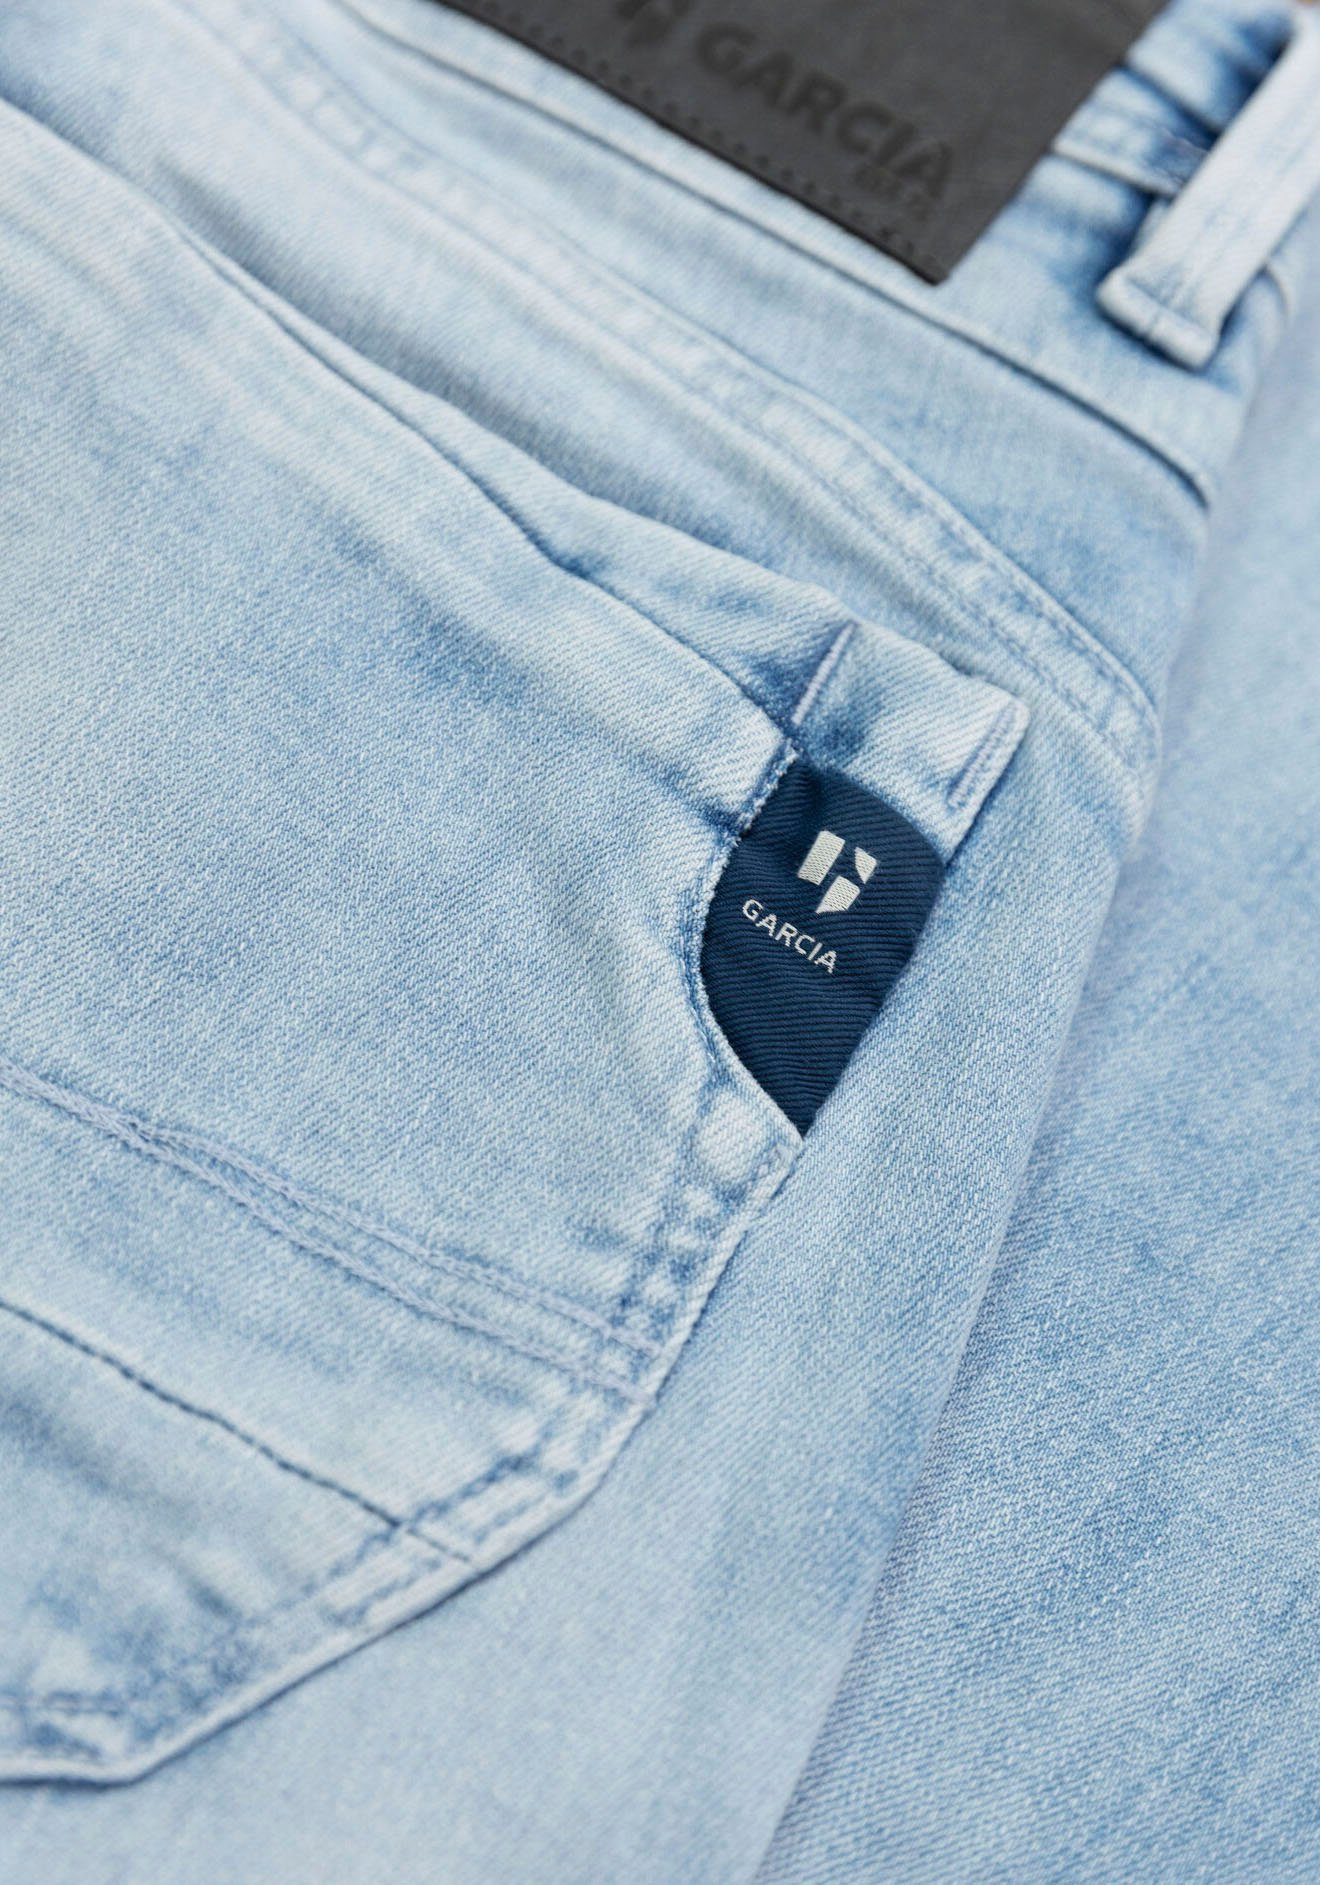 Garcia 5-Pocket-Jeans Waschungen Rocko bleached in verschiedenen